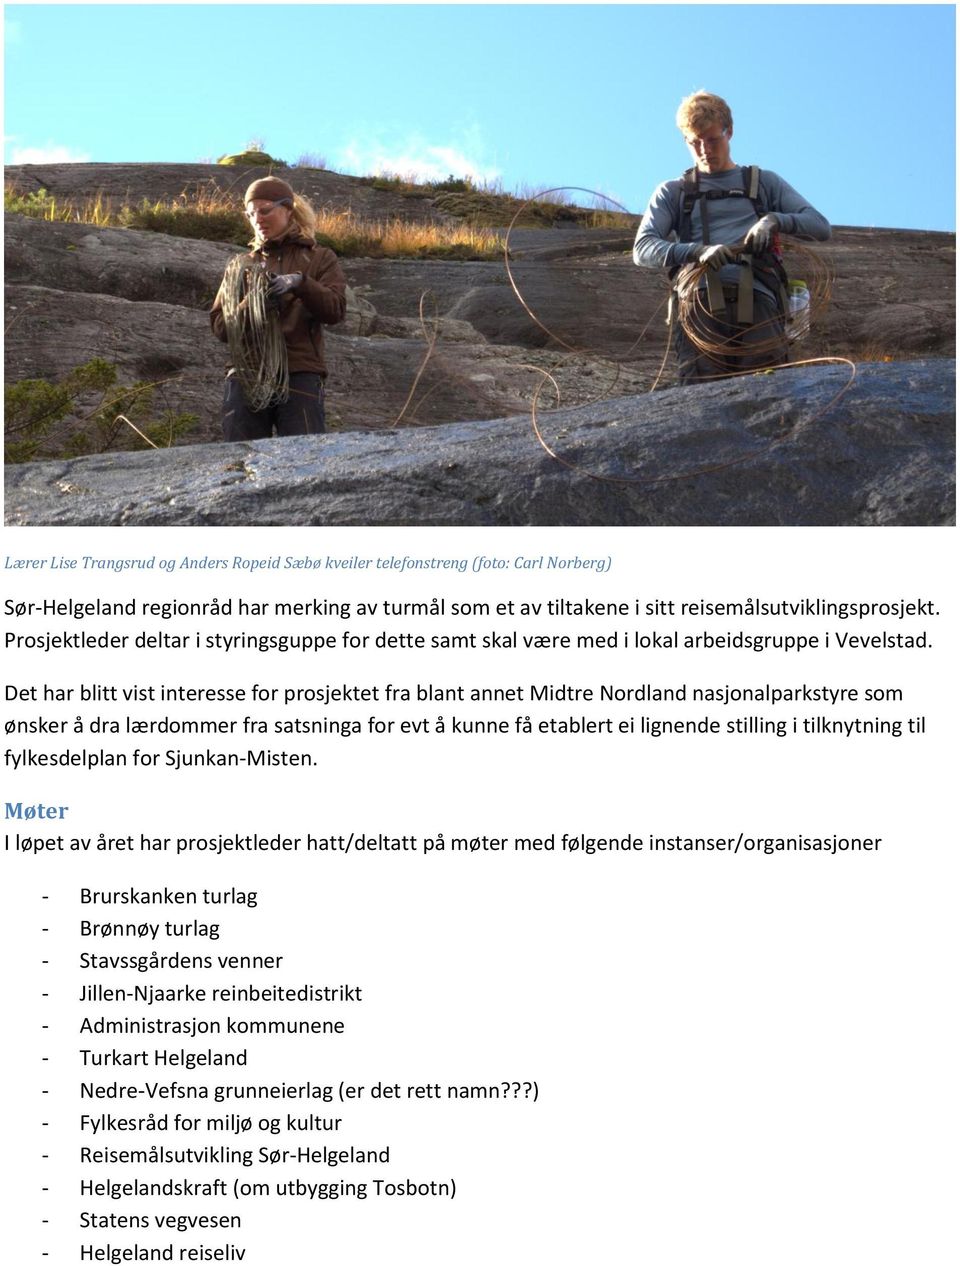 Det har blitt vist interesse for prosjektet fra blant annet Midtre Nordland nasjonalparkstyre som ønsker å dra lærdommer fra satsninga for evt å kunne få etablert ei lignende stilling i tilknytning